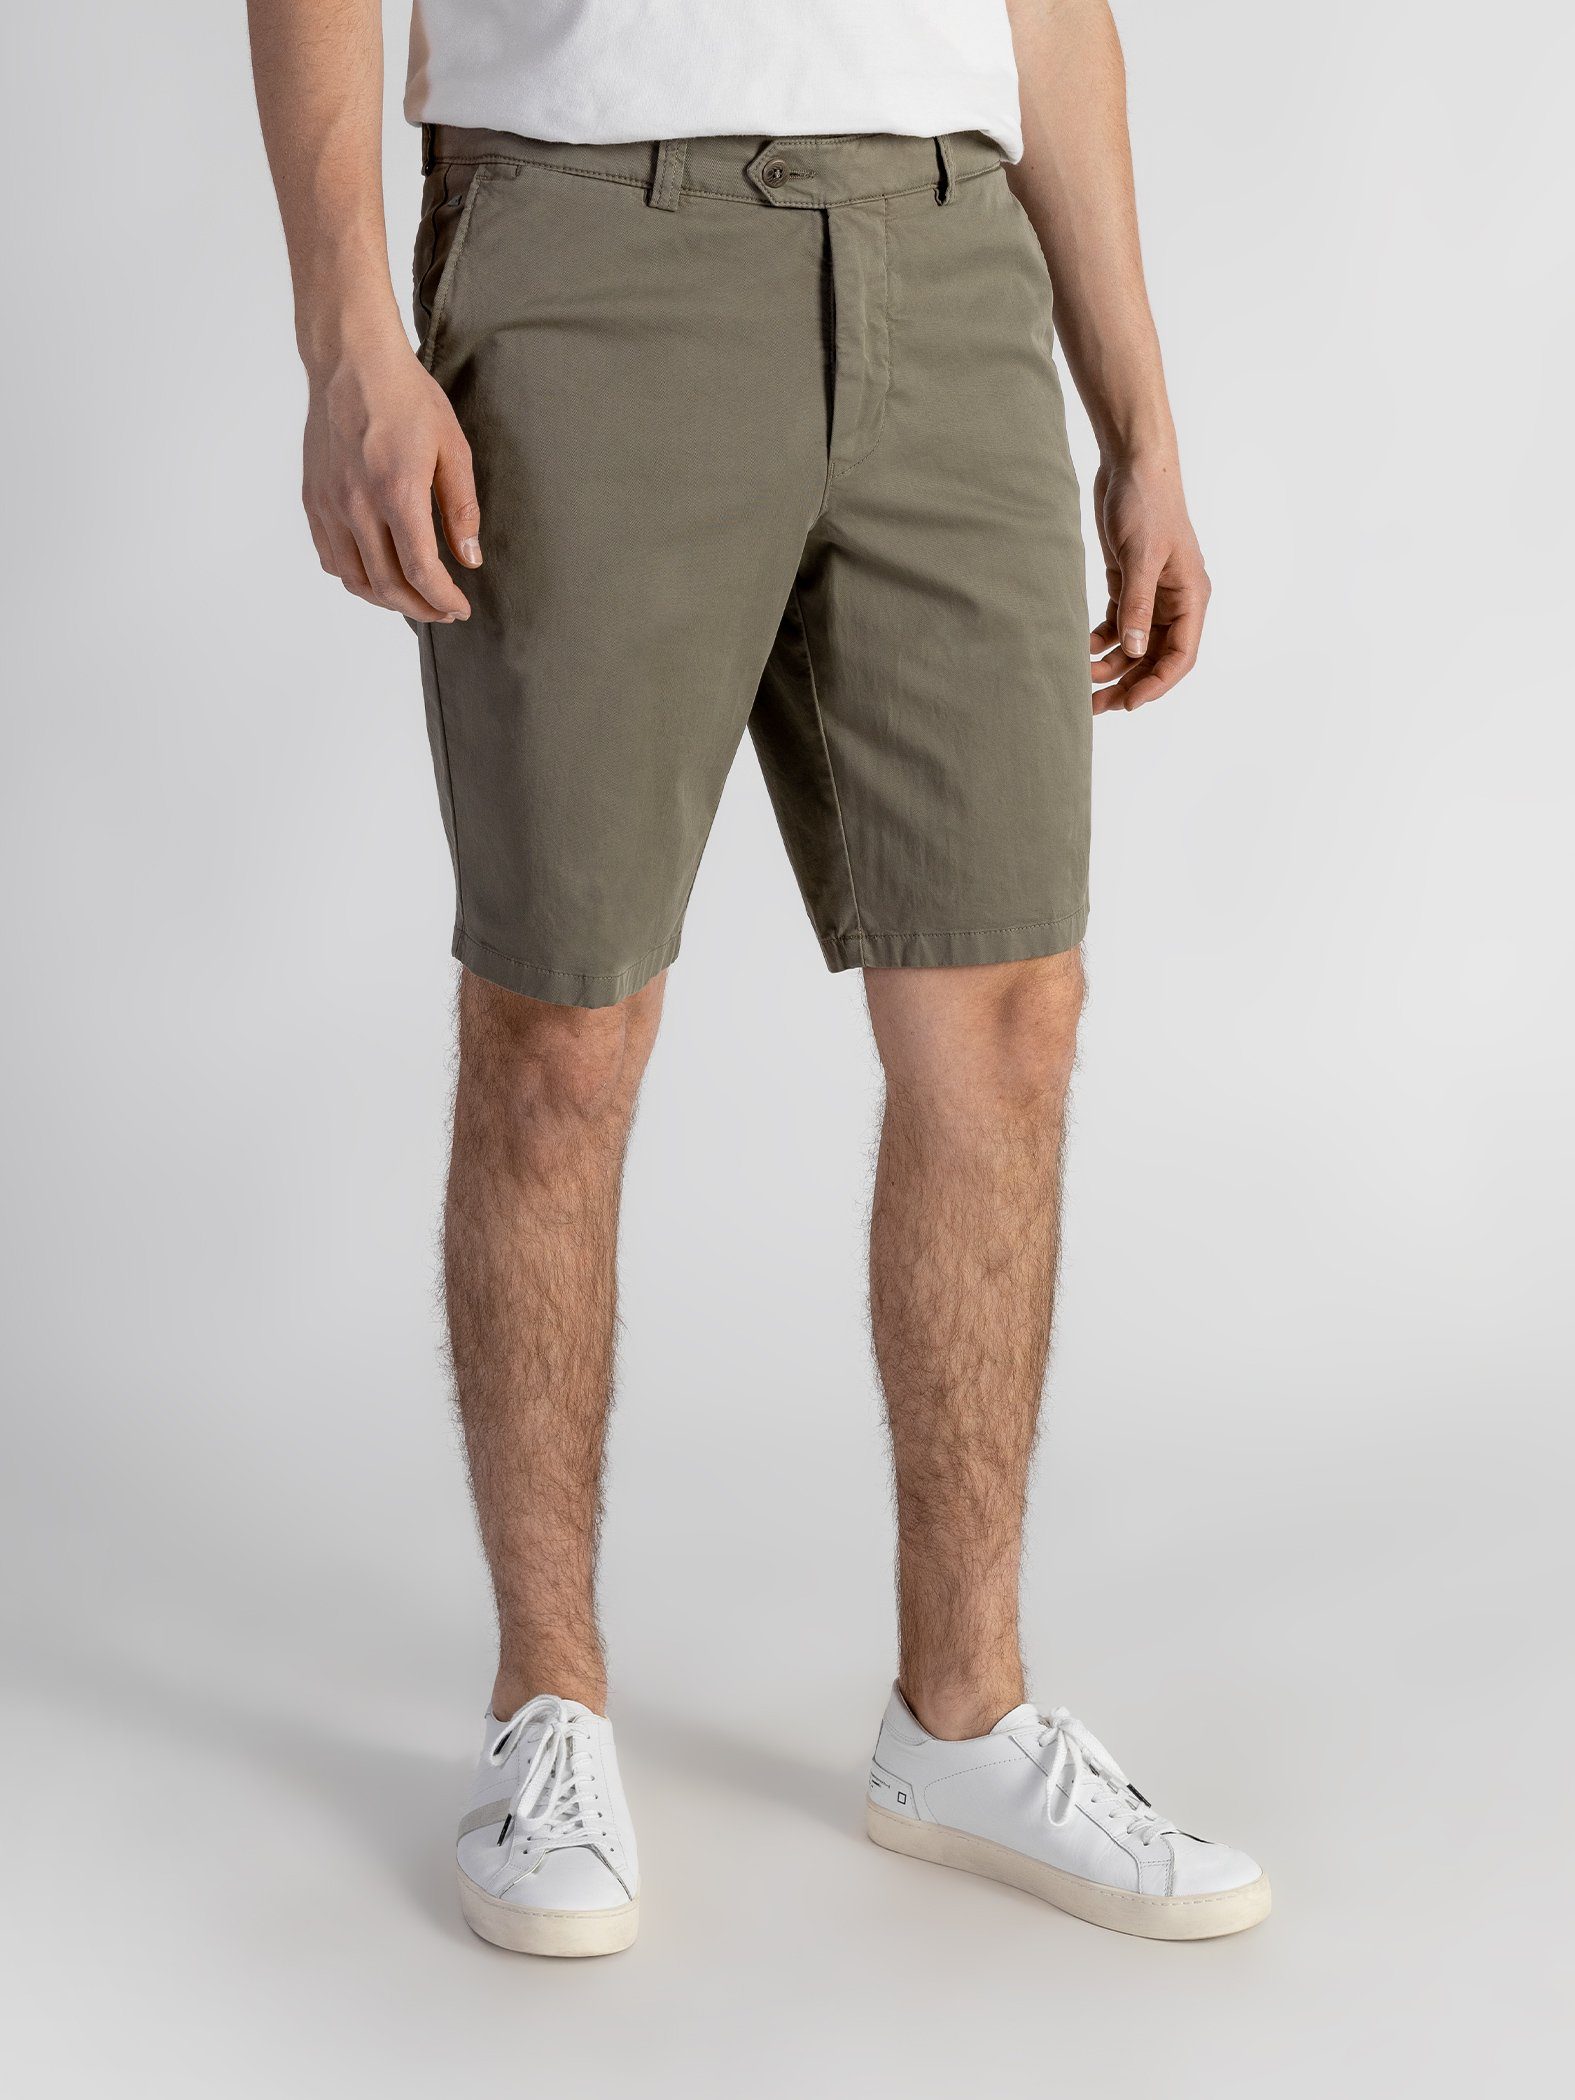 TwoMates Shorts Shorts mit elastischem Bund, Farbauswahl, GOTS-zertifiziert olivgrün